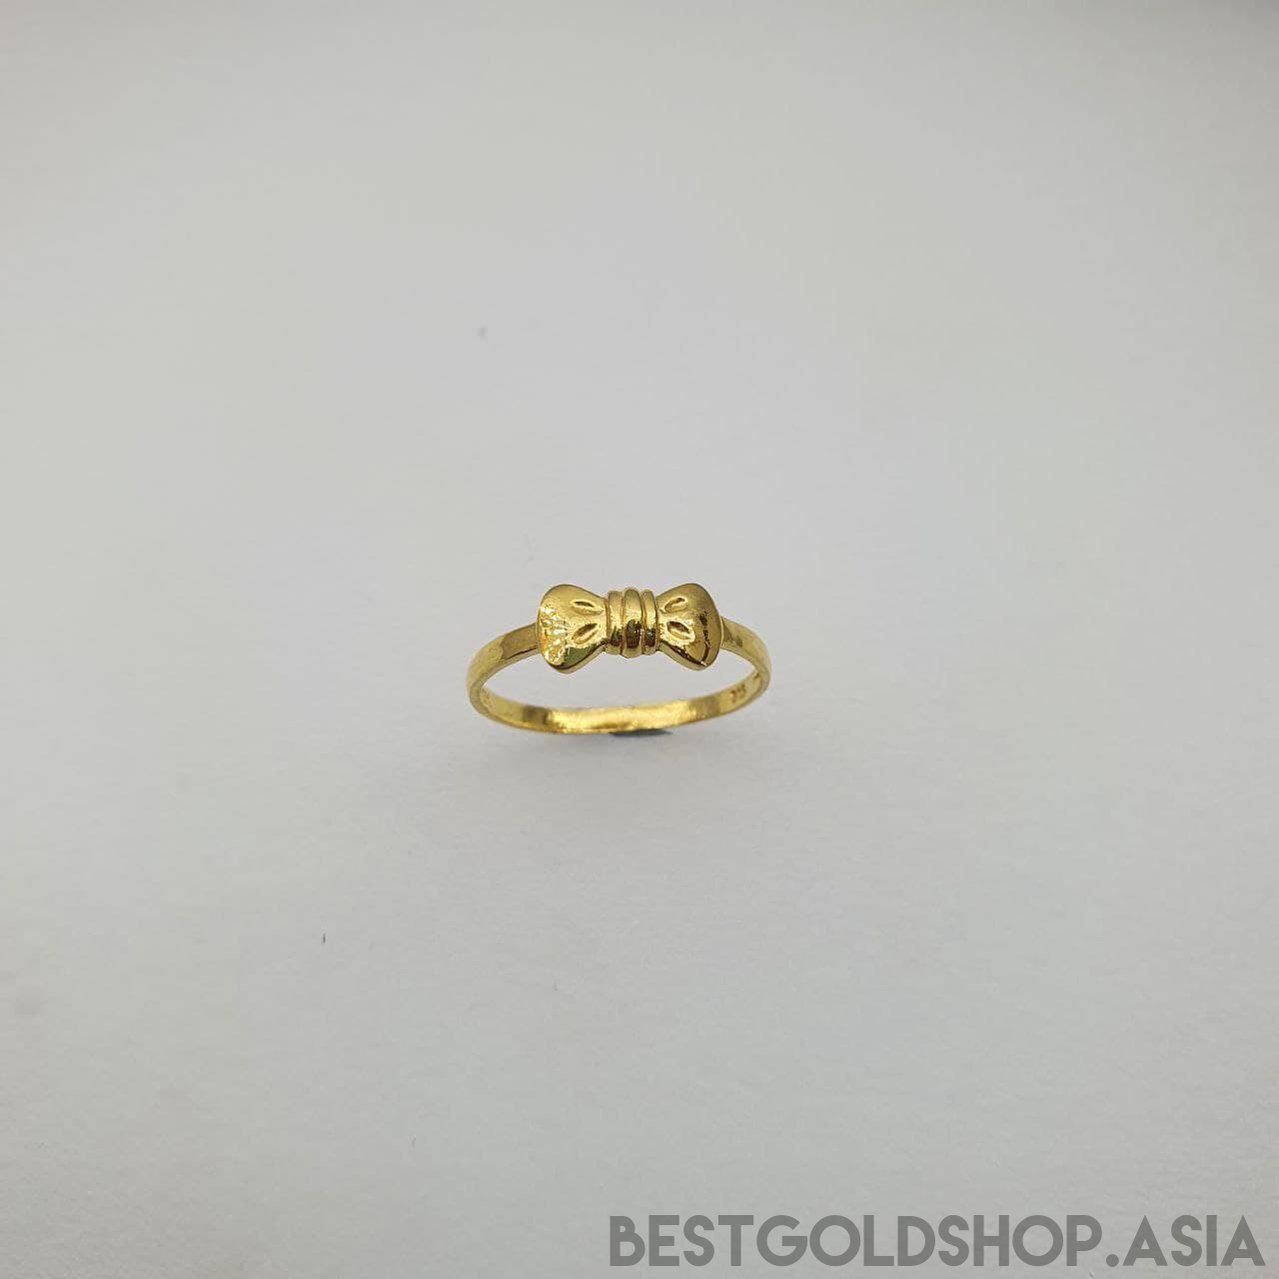 22k / 916 Gold Ribbon Ring V2-916 gold-Best Gold Shop